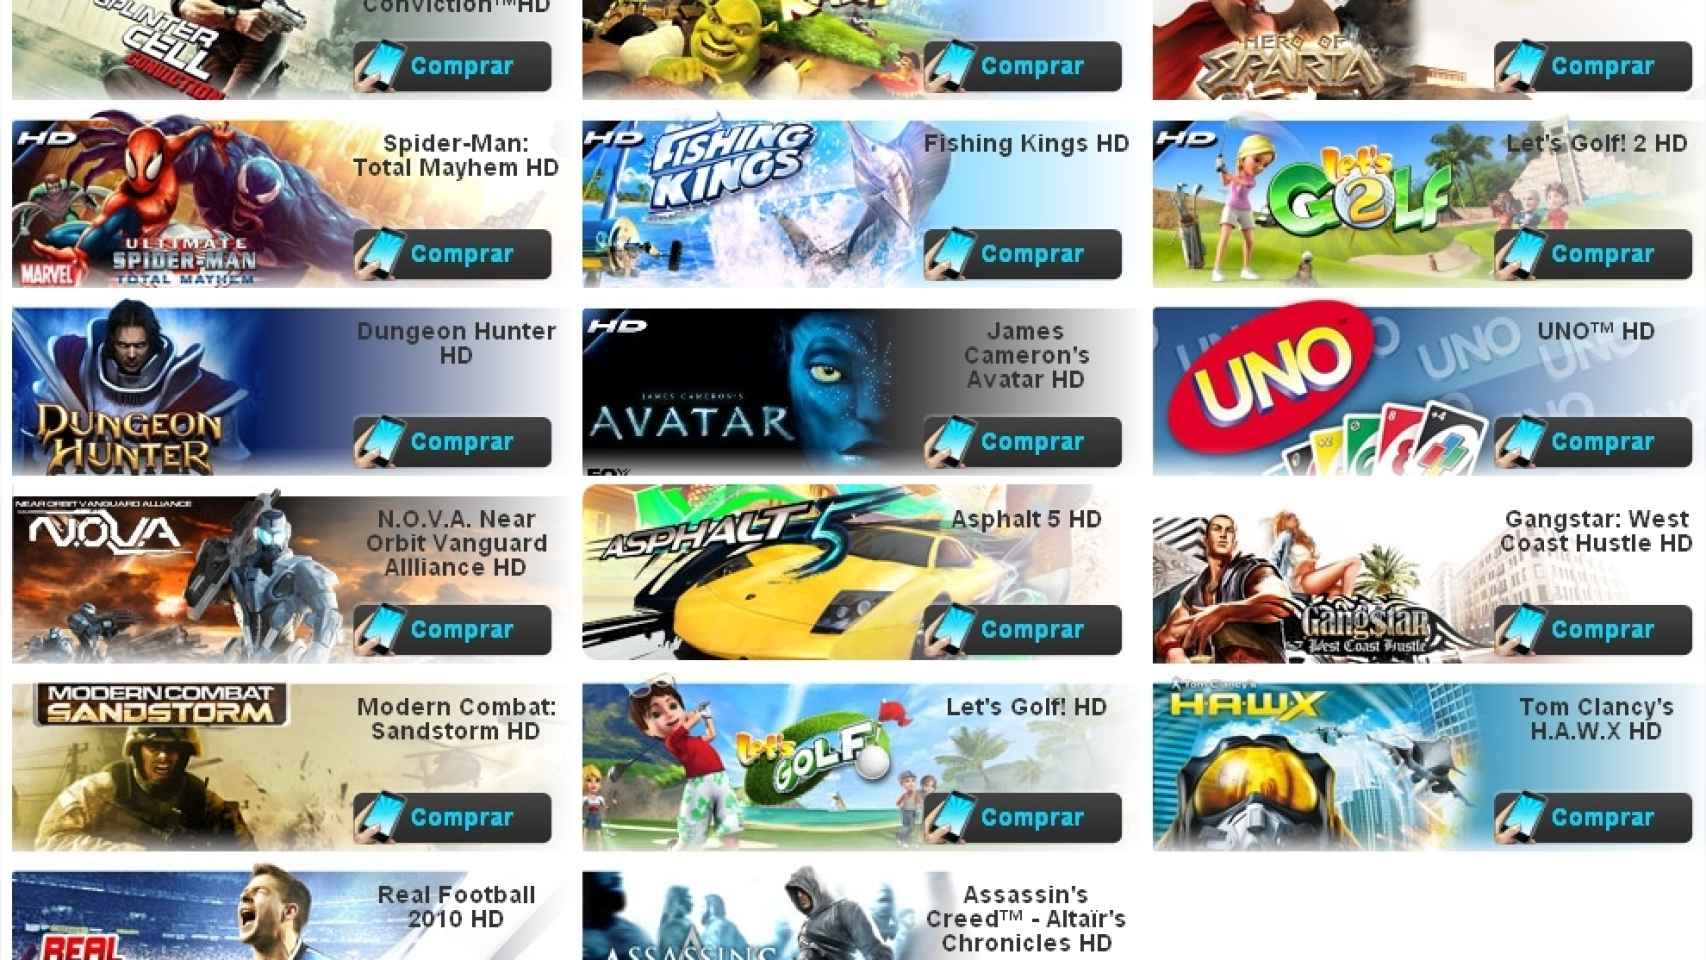 Gameloft pasa a manos de Vivendi, el gigante multimedia francés